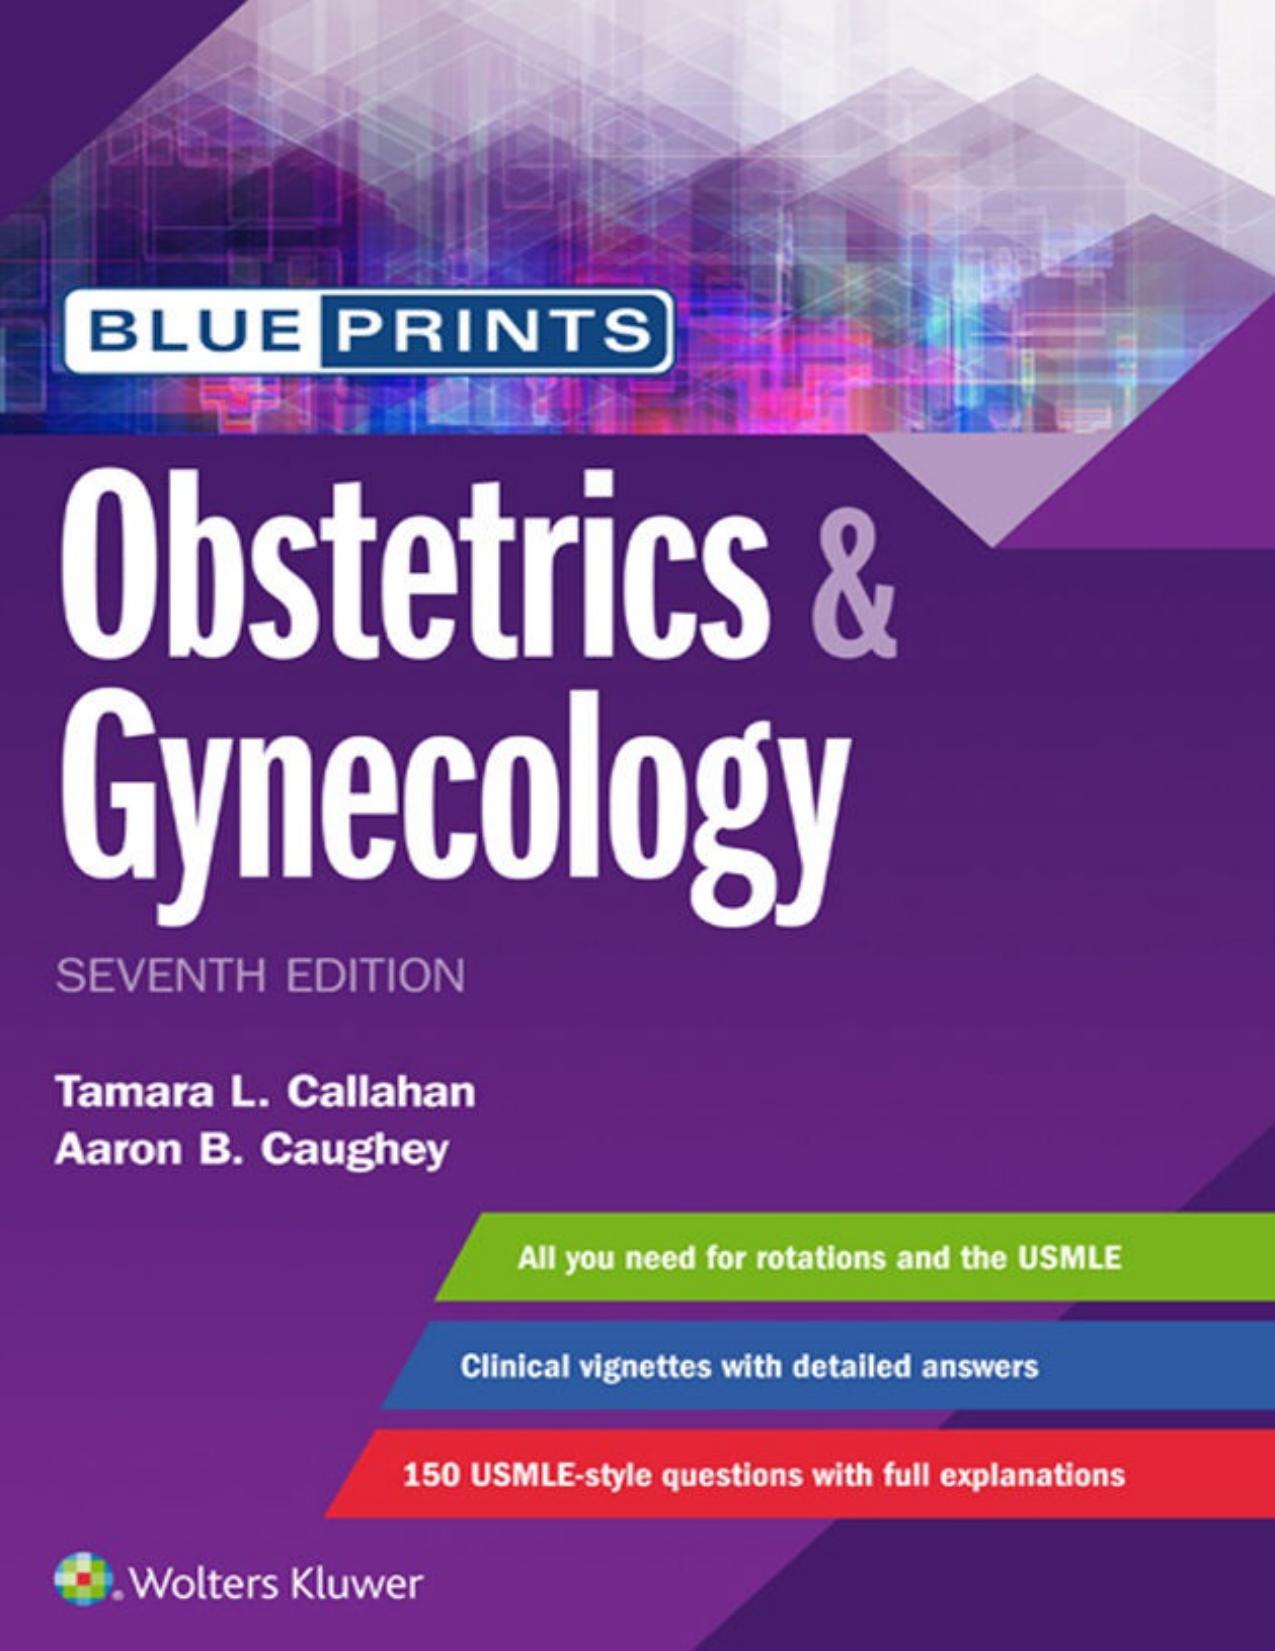 Blueprints Obstetrics & Gynecology 7th ed 2018